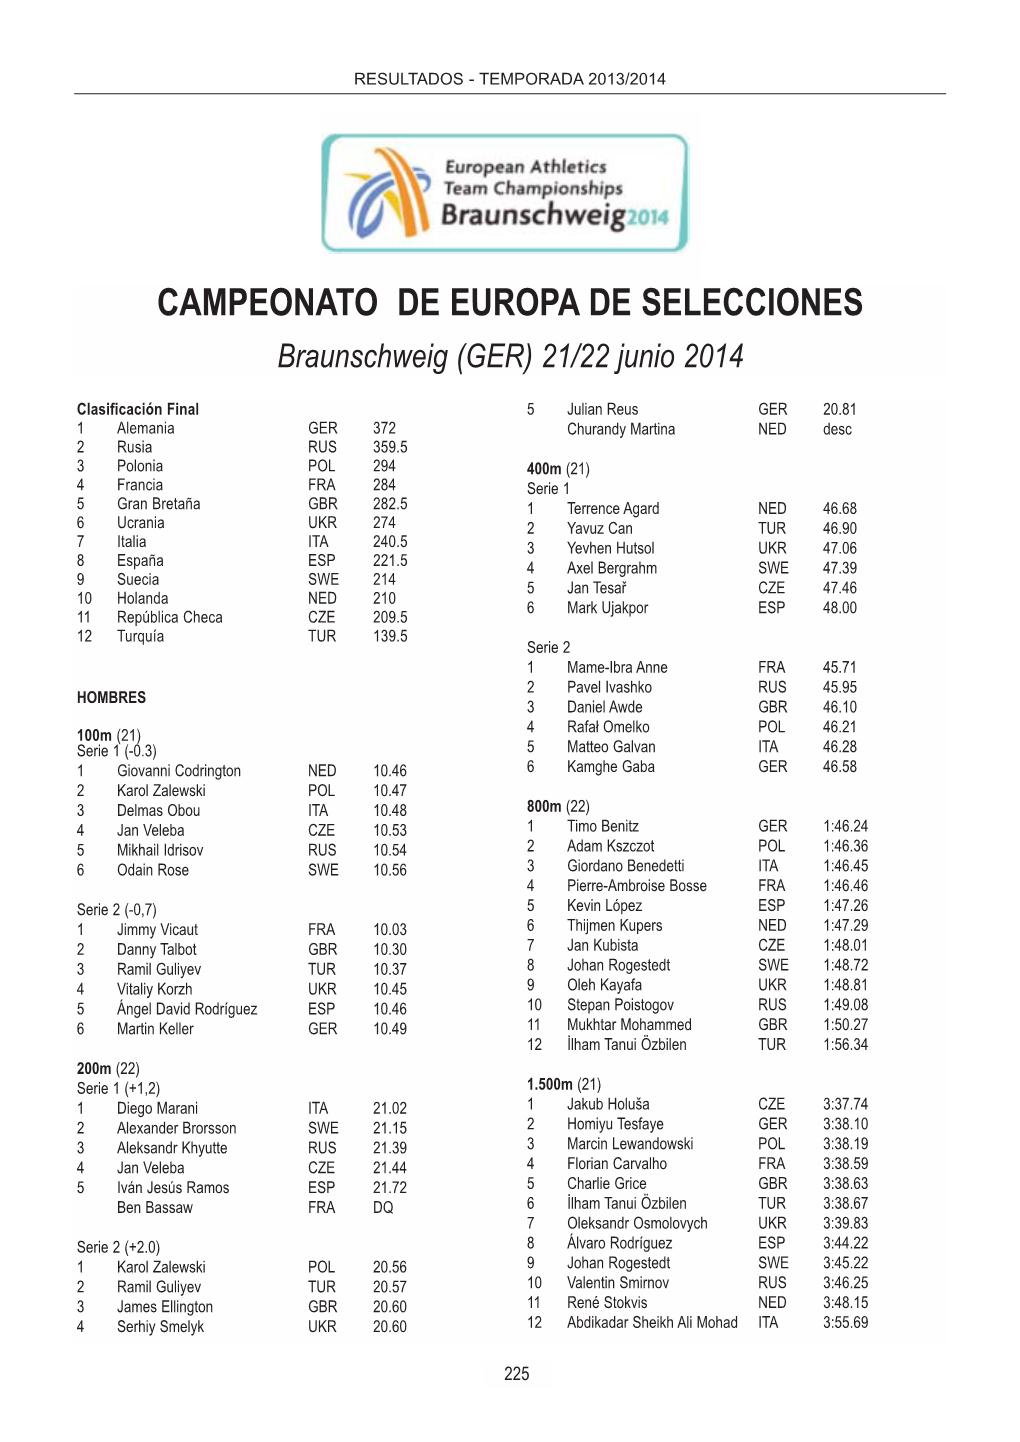 Selección Española Temporada 2013/2014